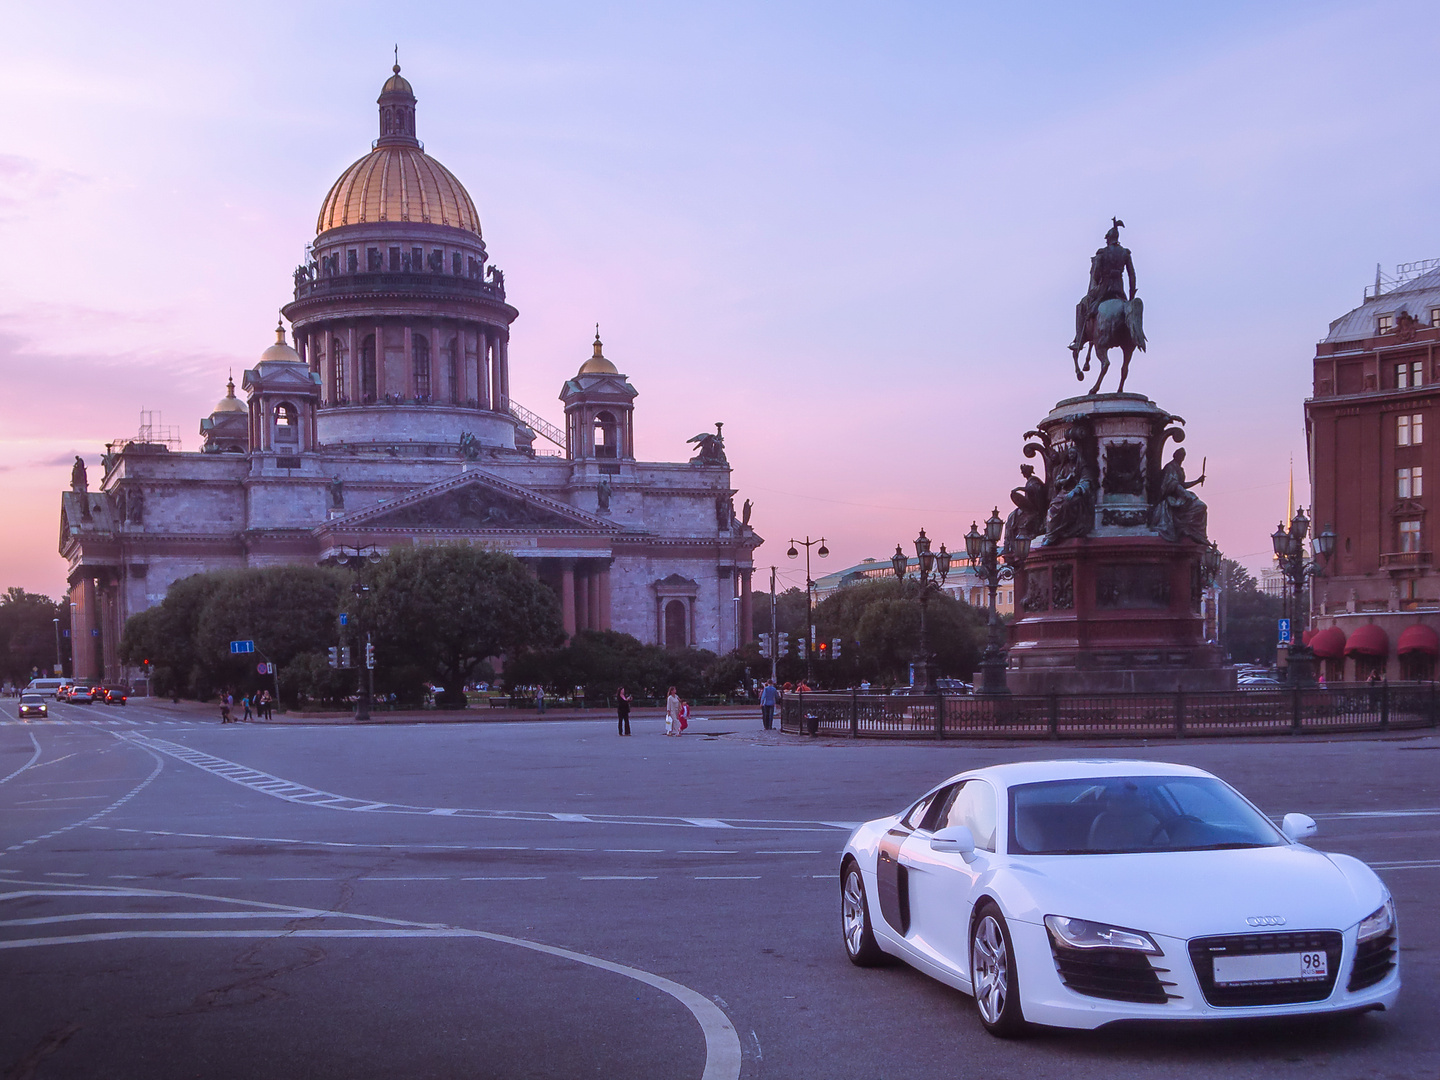 R8 in St. Petersburg